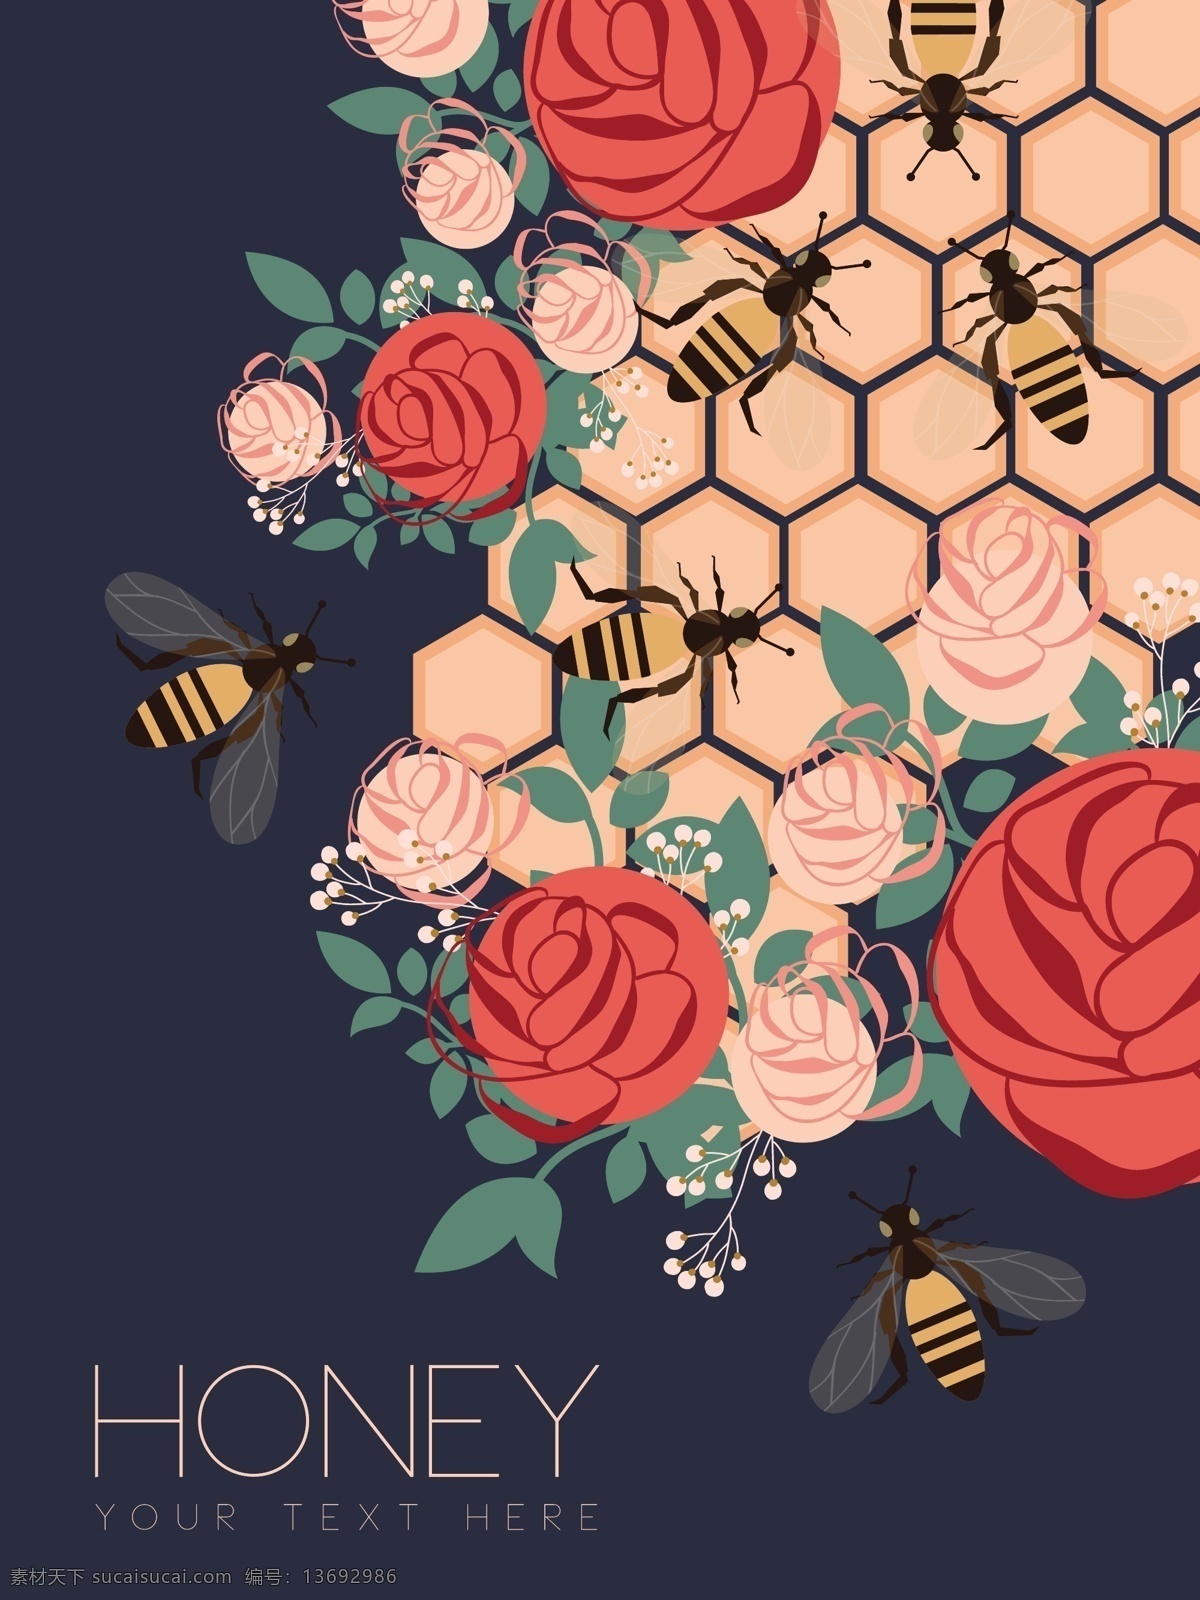 漂亮 鲜花 蜜蜂 背景 图 广告背景 背景素材 广告 蜂蜜 红色 花卉 花朵 蓝色背景 蜂窝 粉色玫瑰 蜂巢